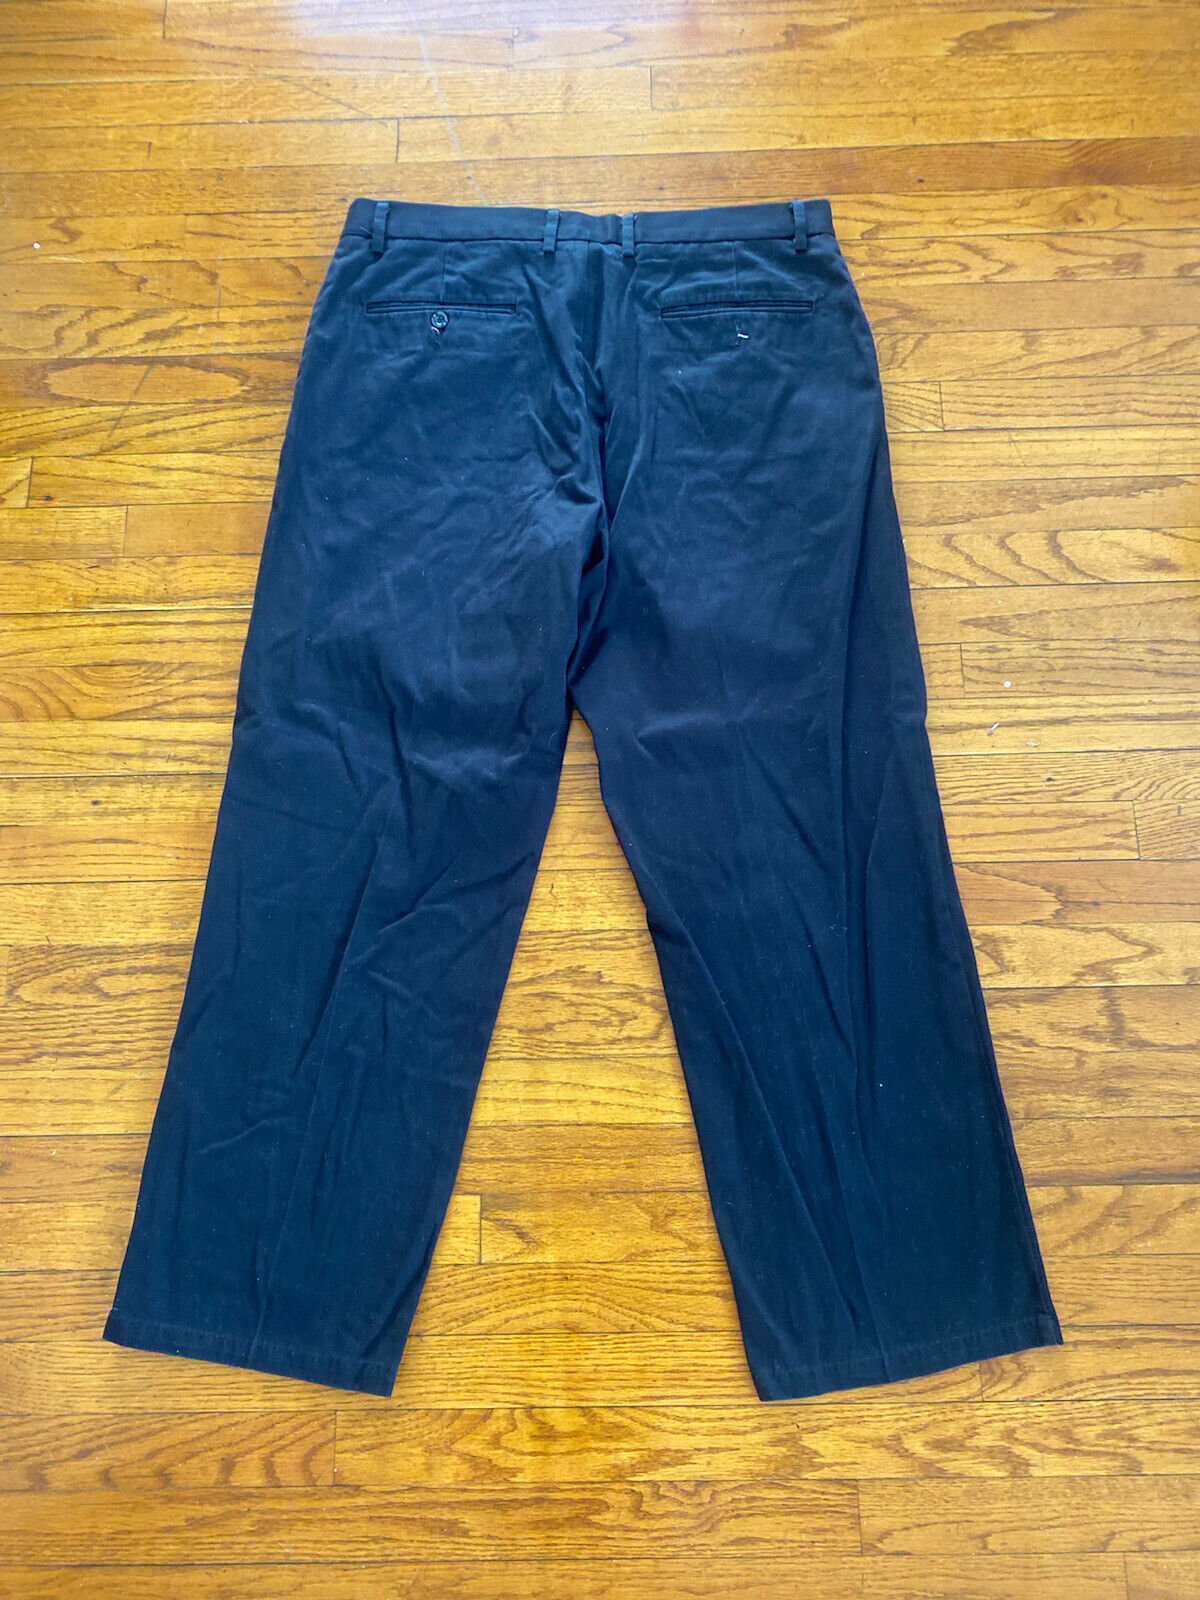 Dark Blue Work Pants - Dockers - Men's 36 X30